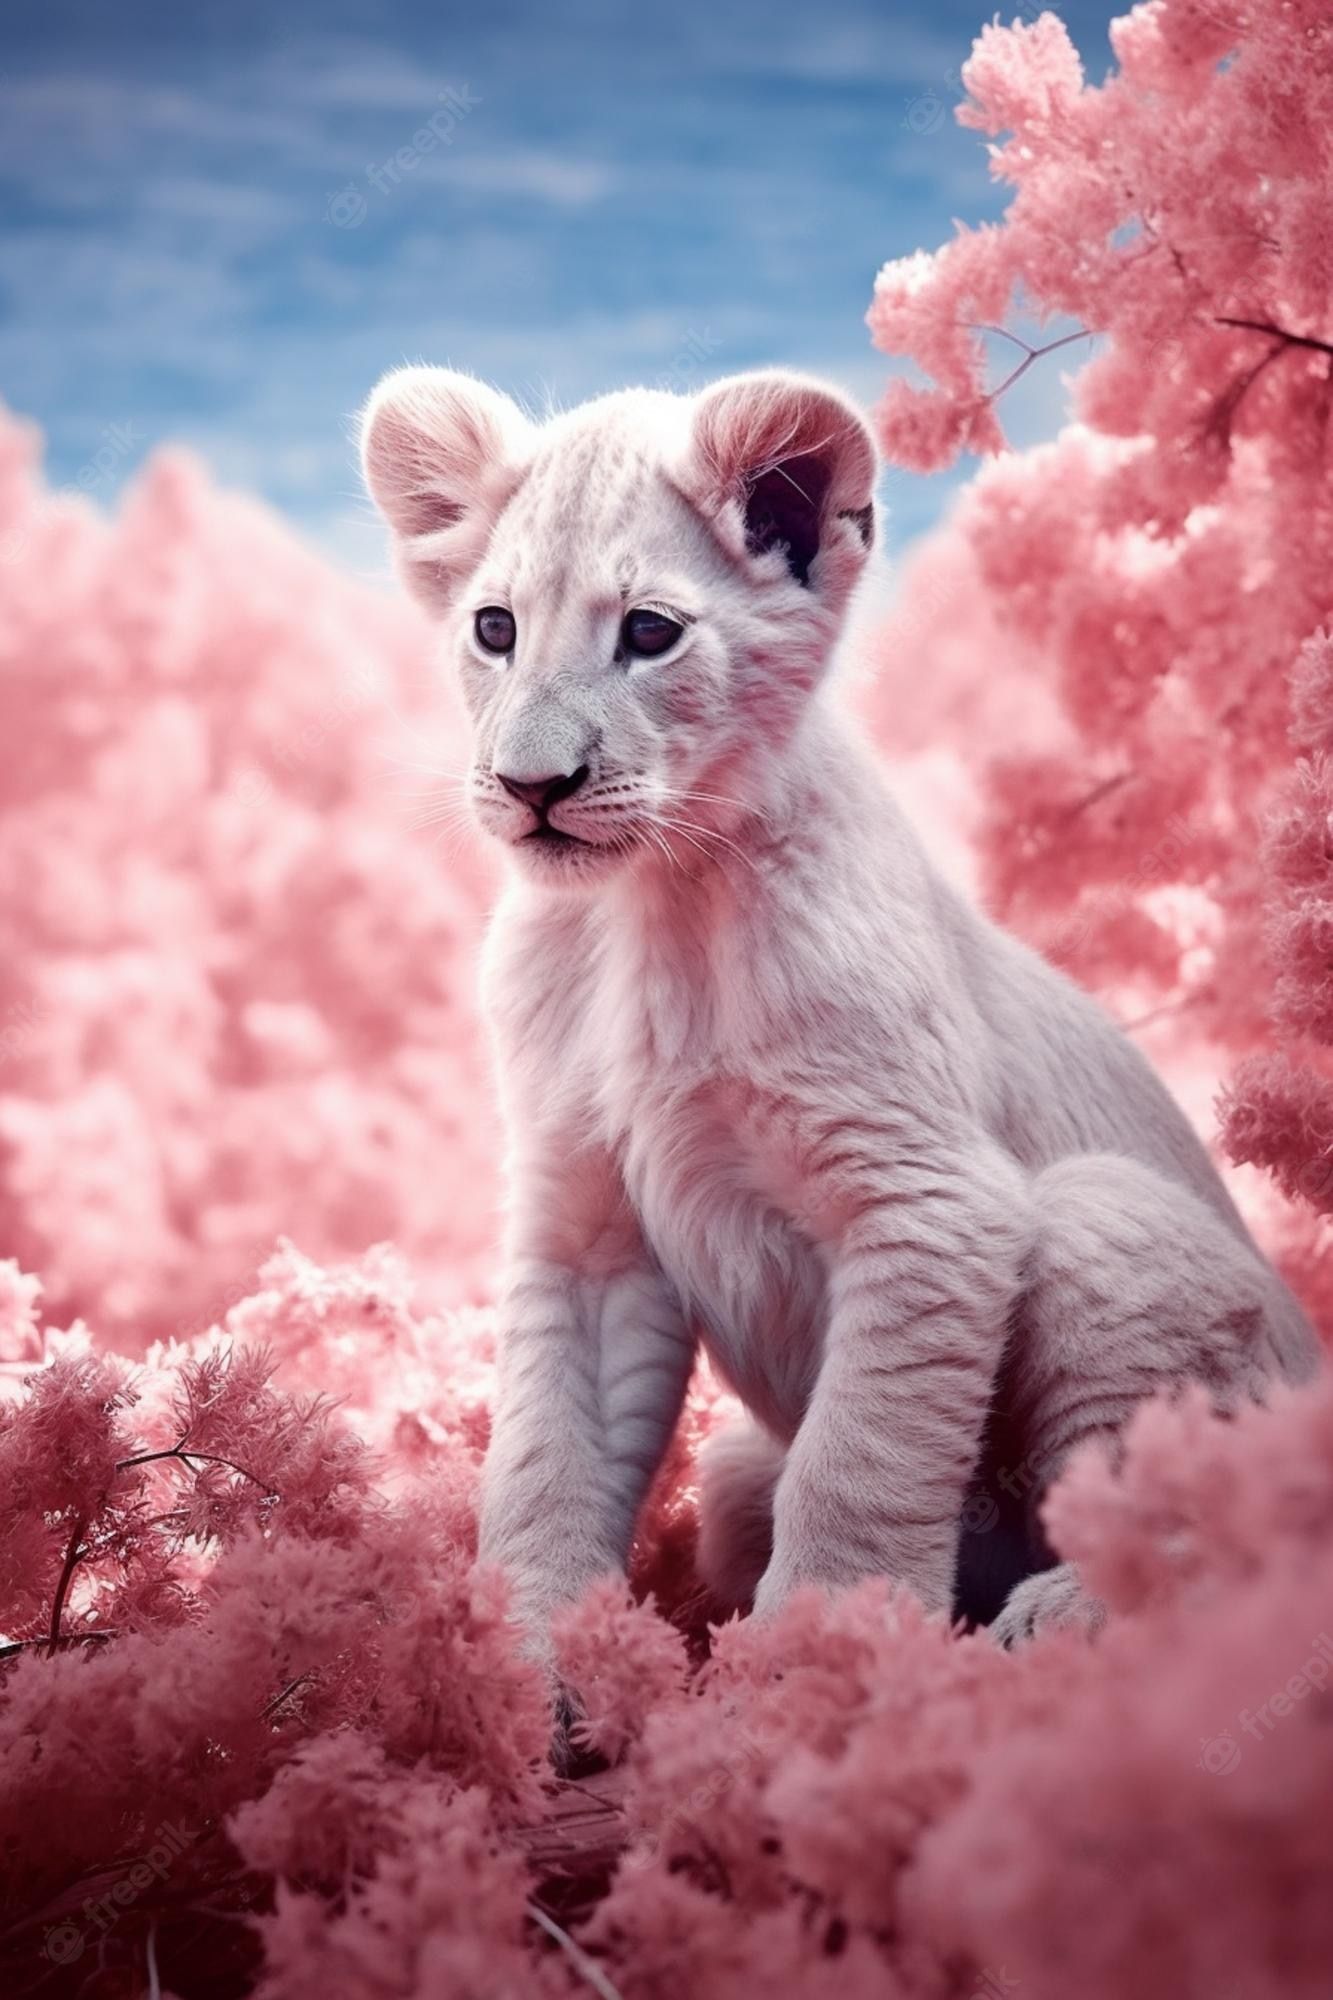  Löwen Hintergrundbild 1333x2000. Ein poster für den könig der löwen mit einem weißen löwenbaby, das in rosa blumen sitzt